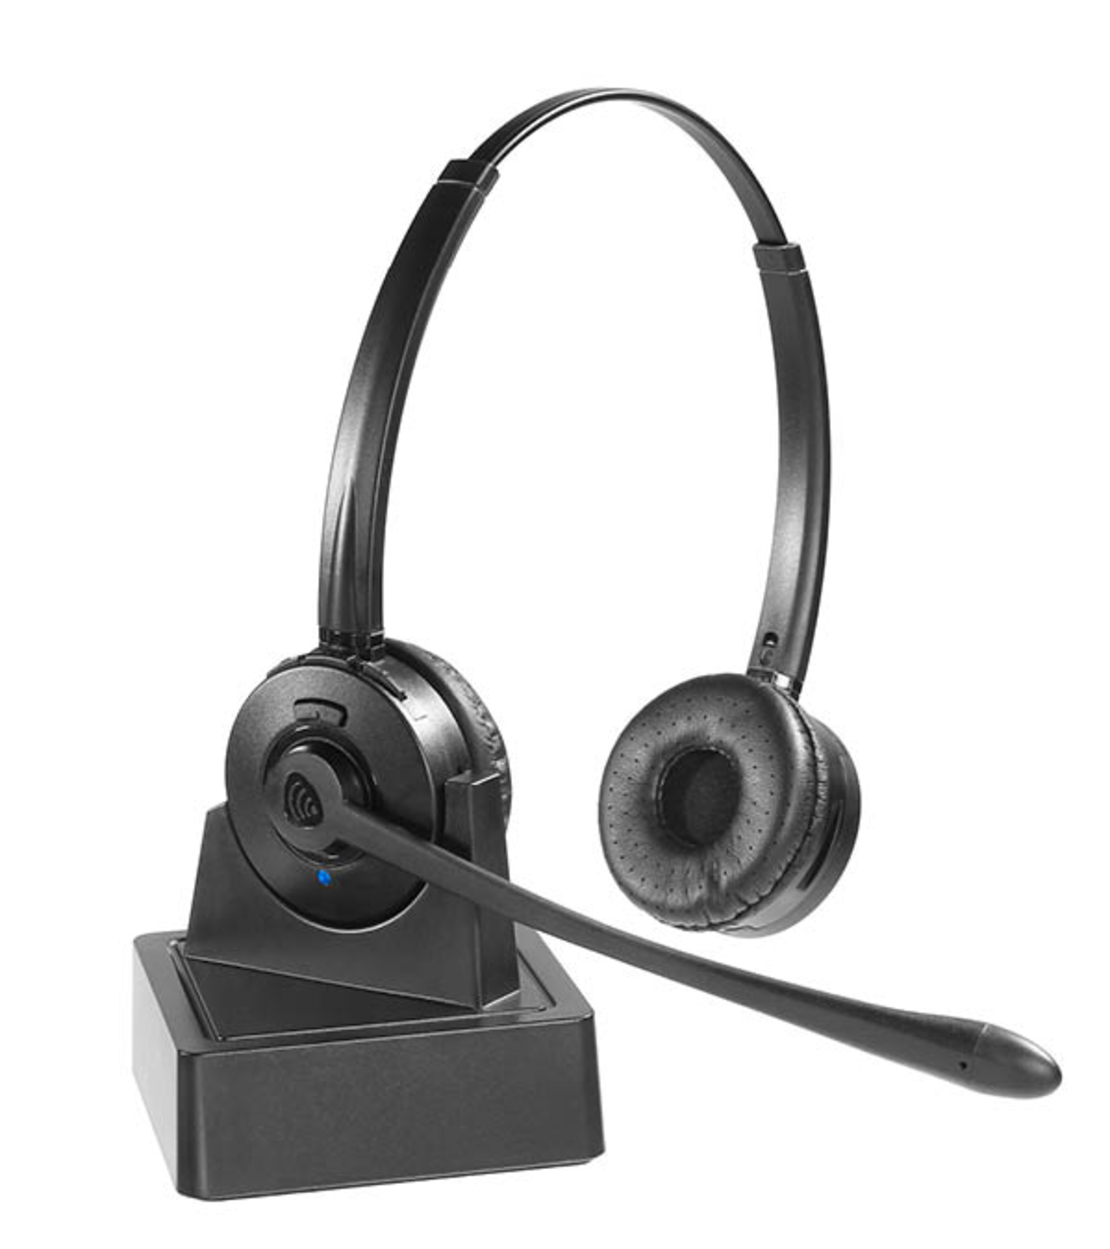 מערכת ראש (אוזניה) אלחוטית למחשב / לטלפון הנייד VT9600BT B Bluetooth Headset